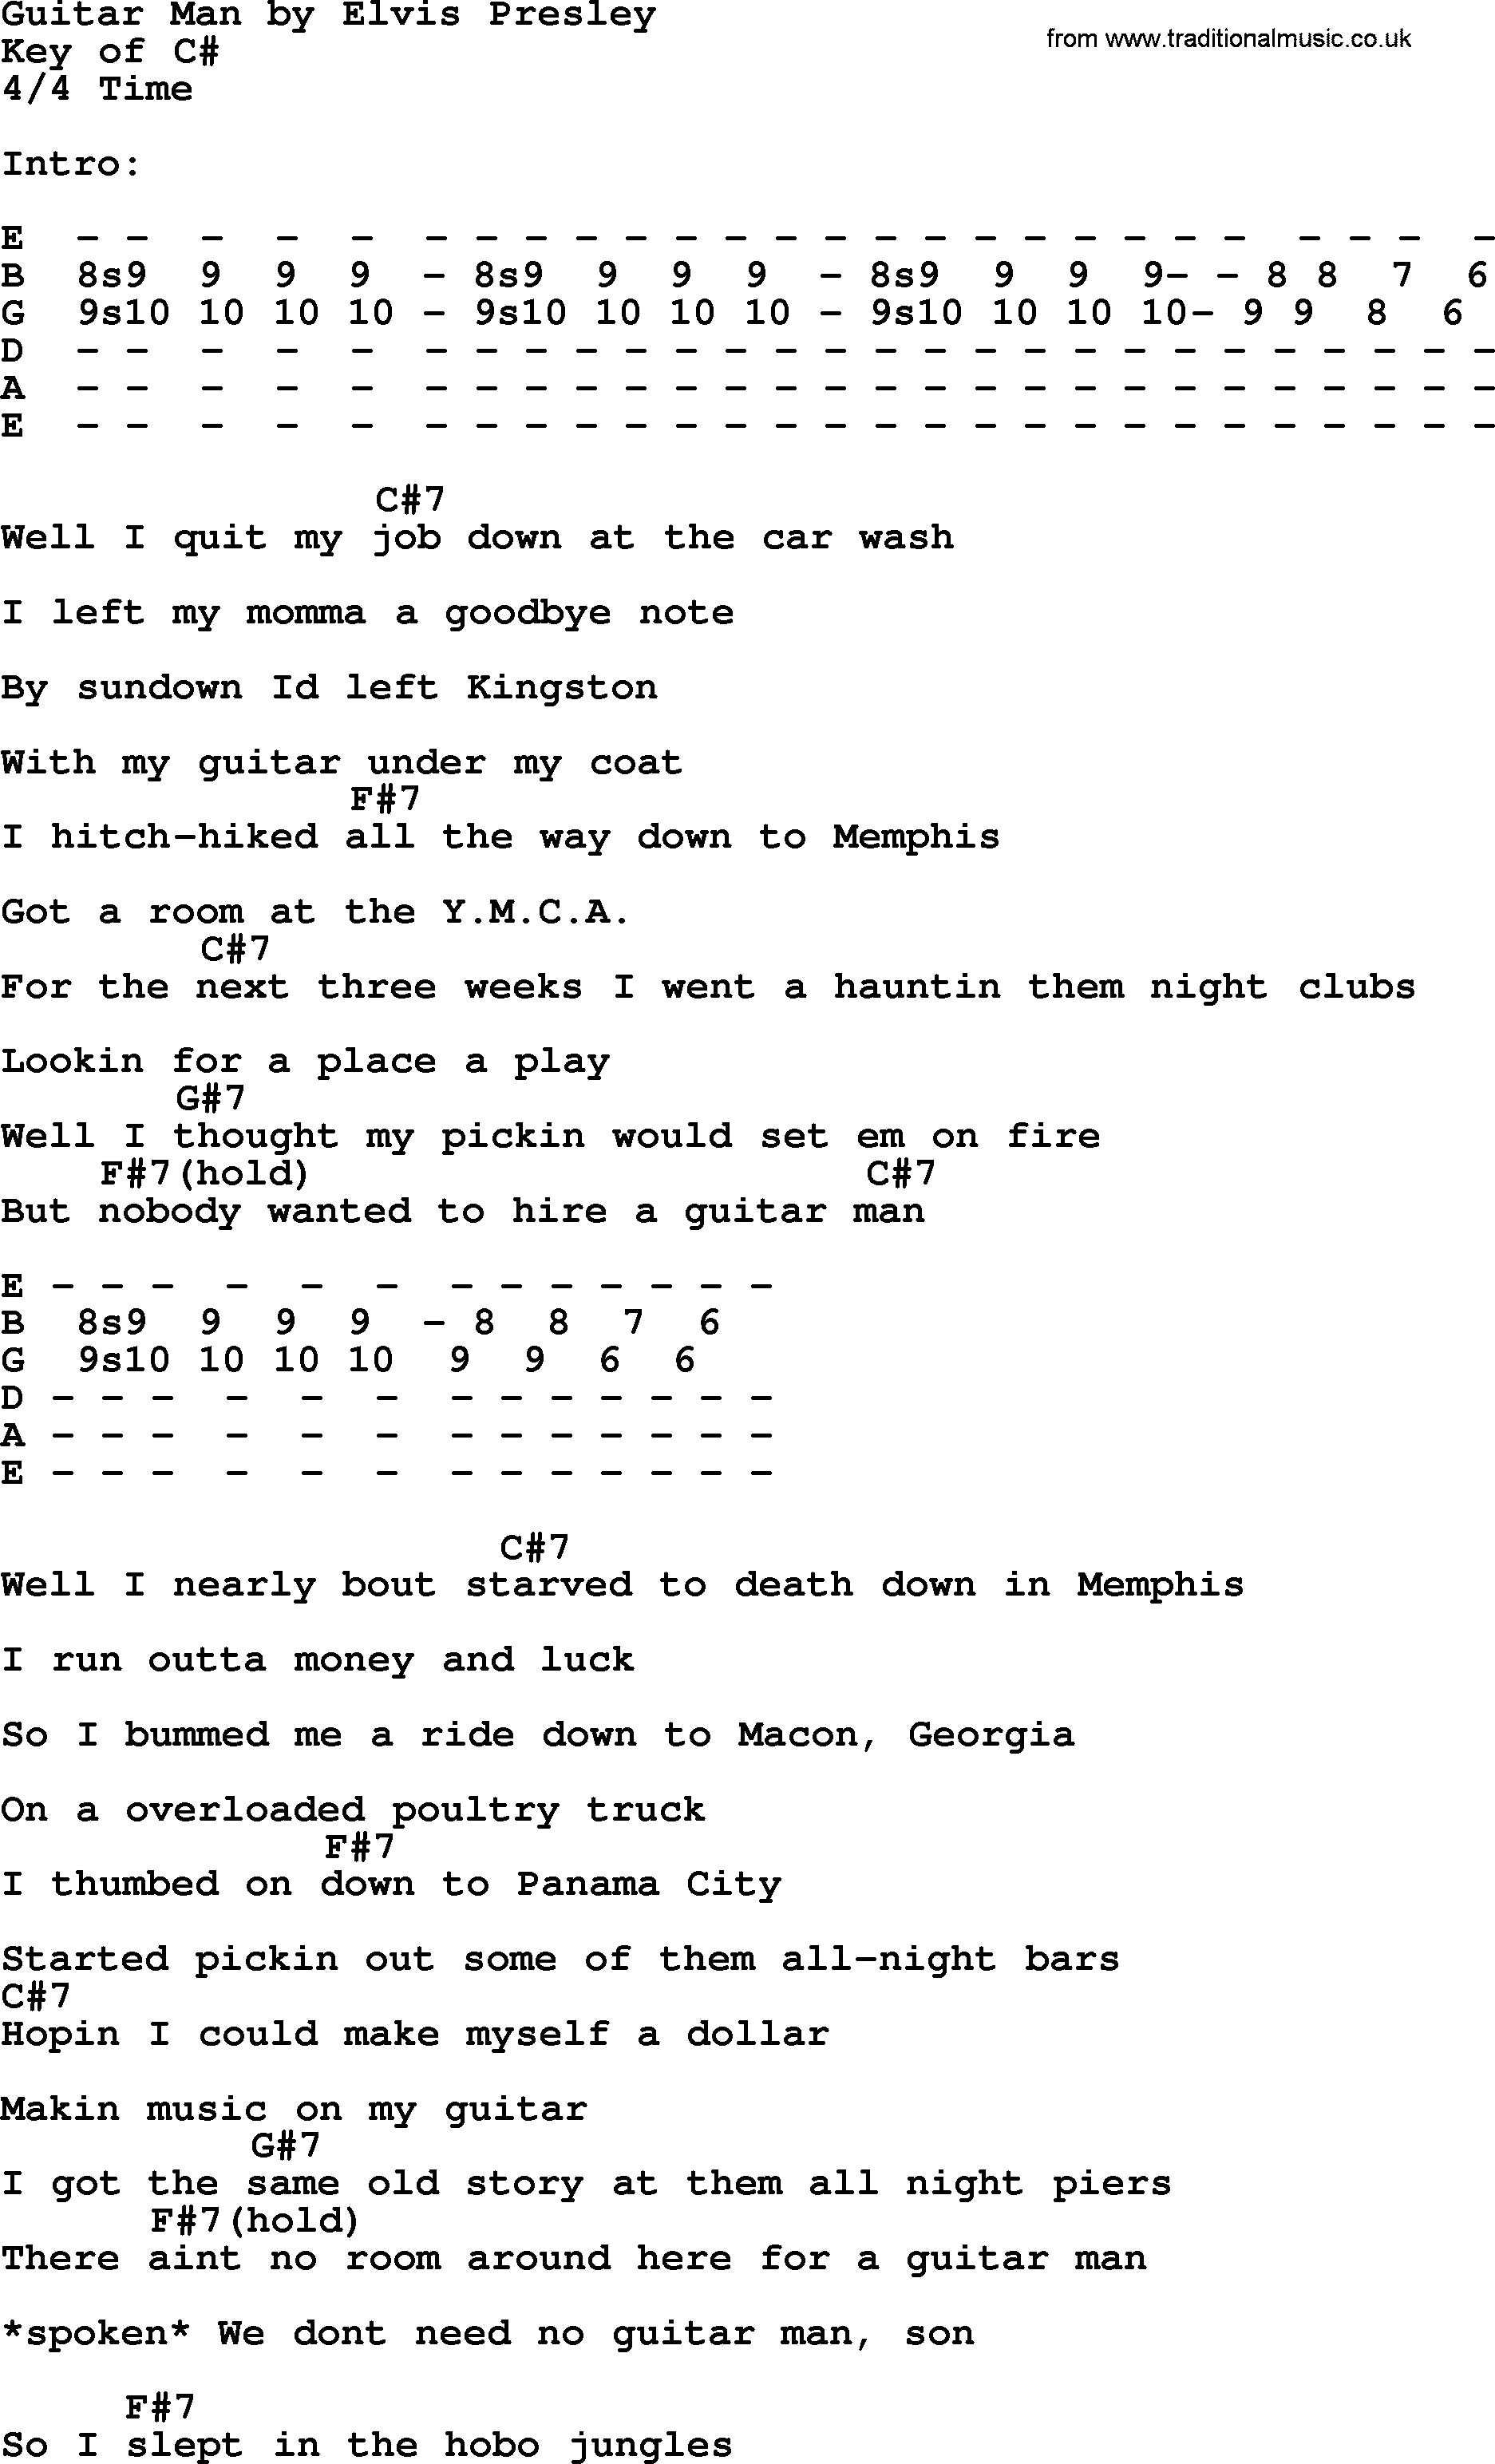 Guitar Man, by Elvis Presley - lyrics and chords - Elvis Presley Songs On Guitar